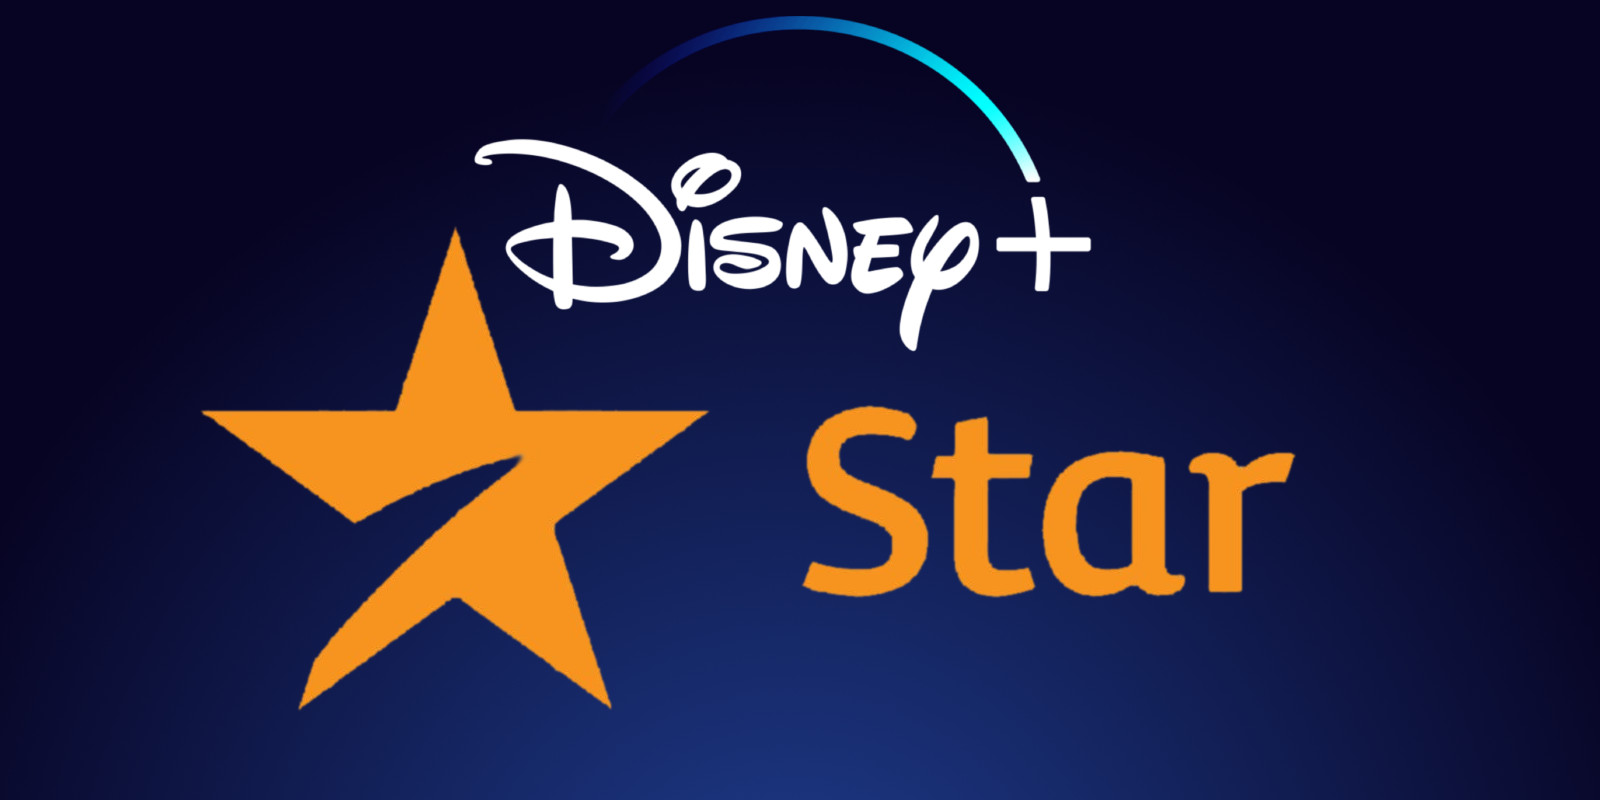 Disney+, ecco tutte le nuove produzioni originali italiane ed europee di Star zerkalo spettacolo